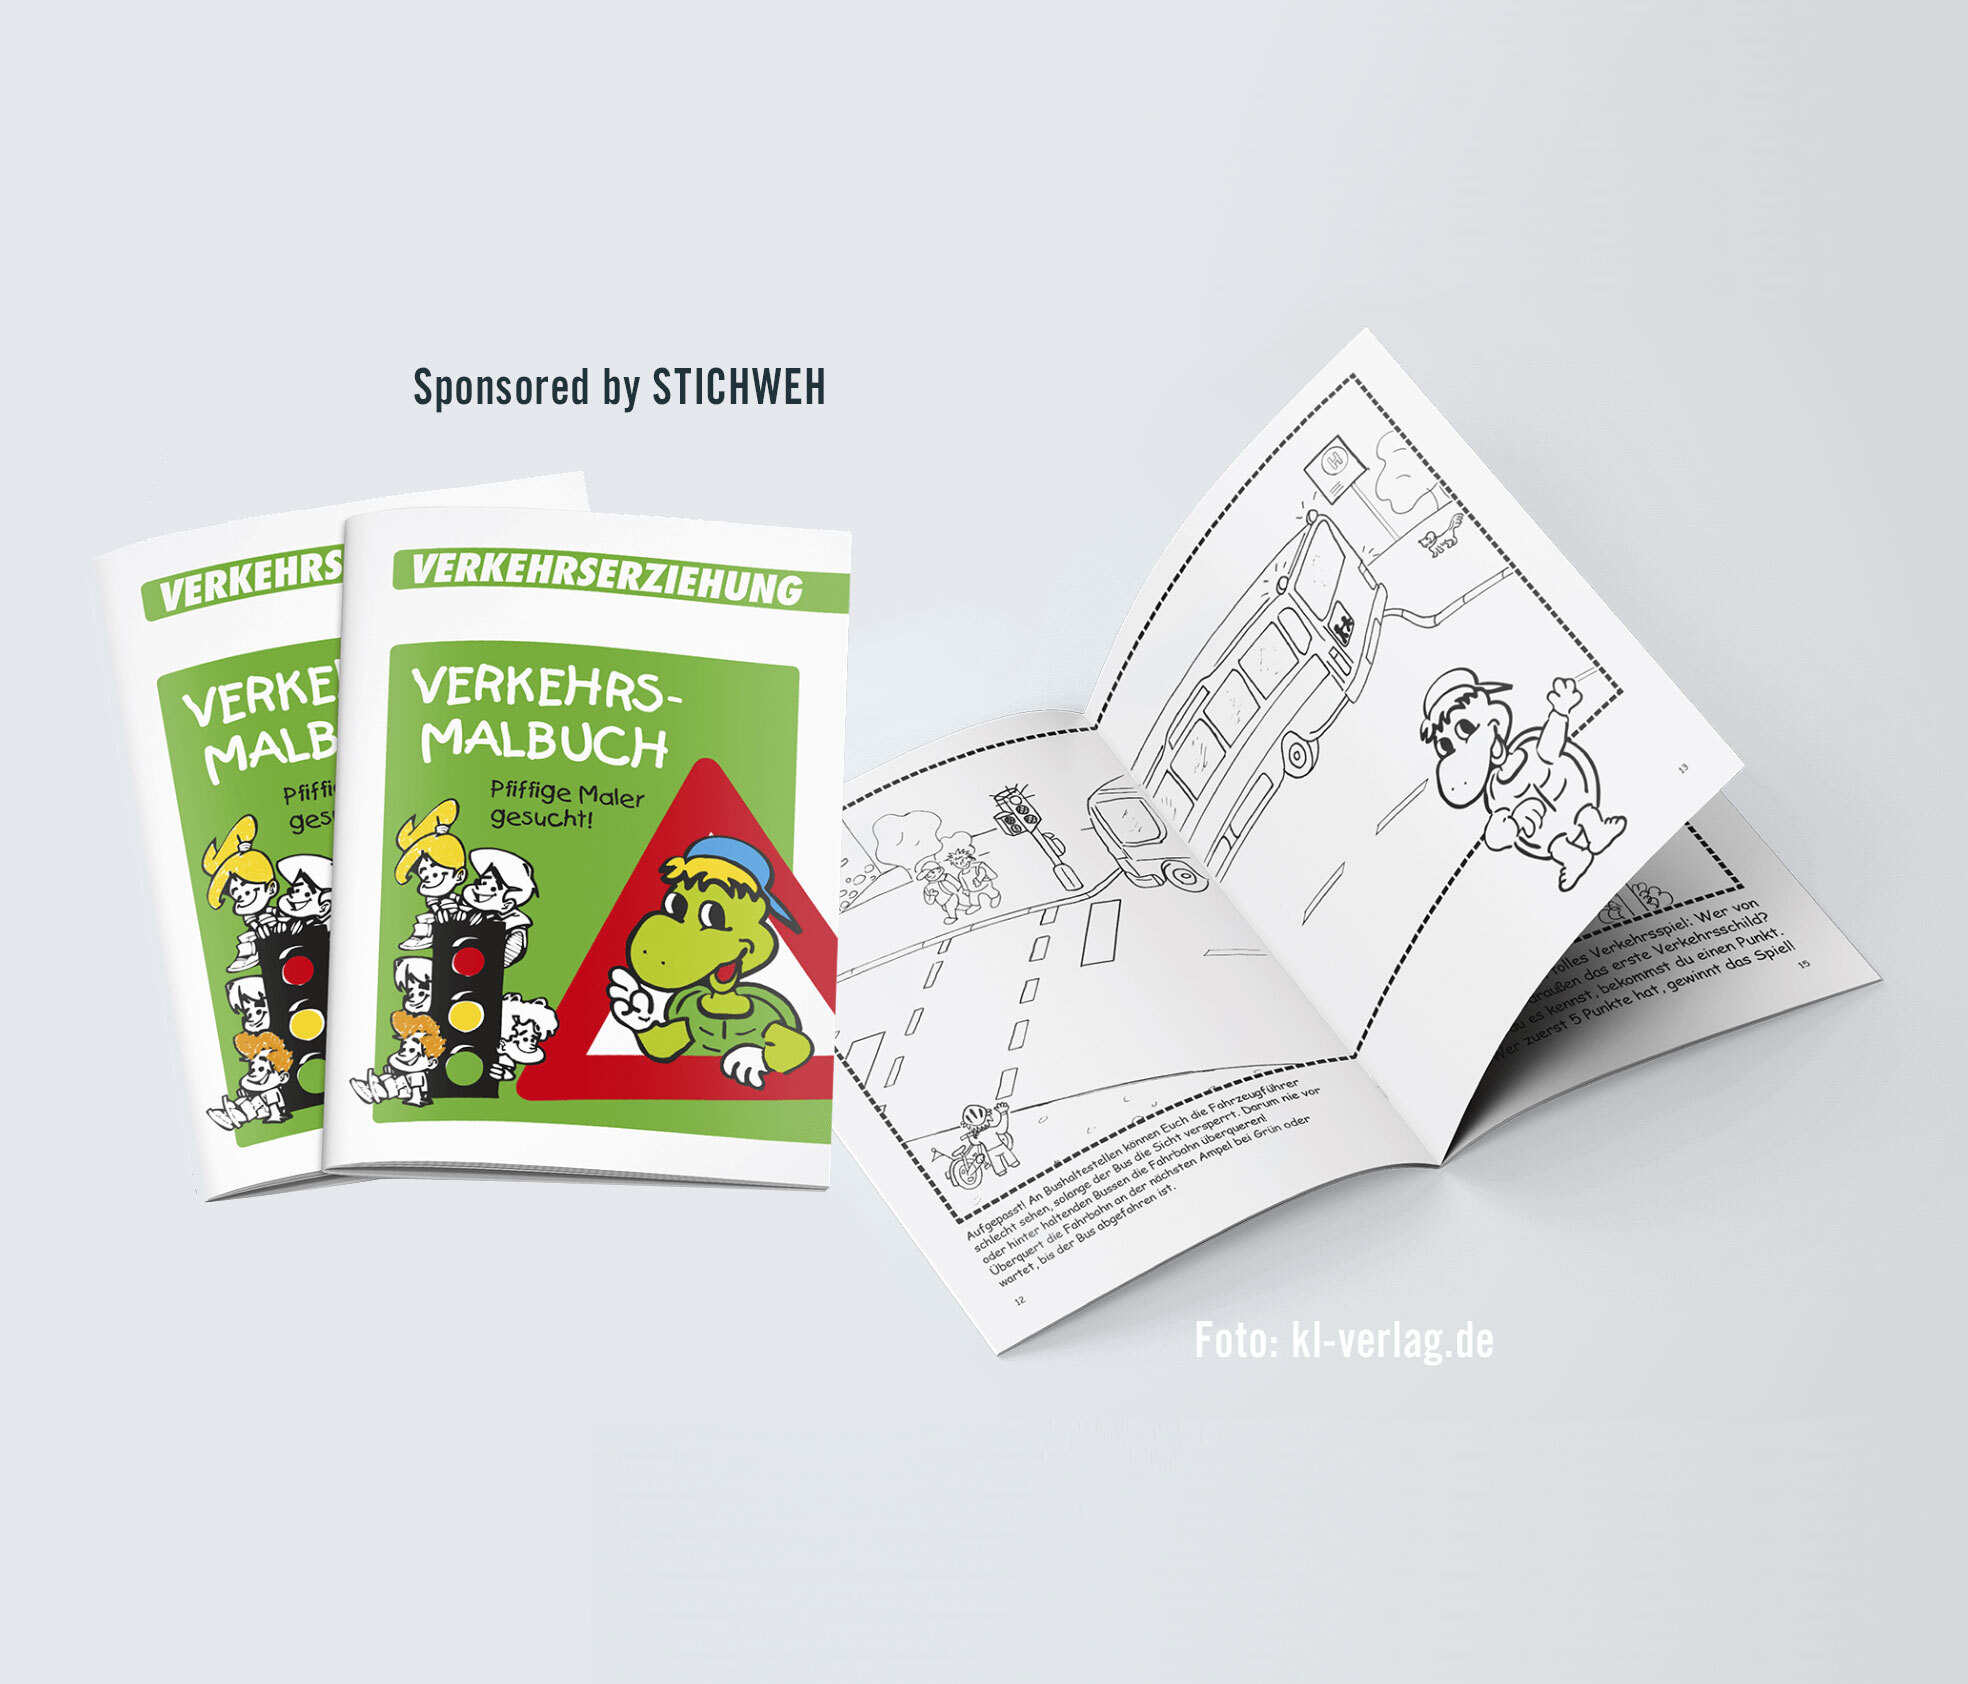 Malbuch für Kinder, gesponsored von STICHWEH